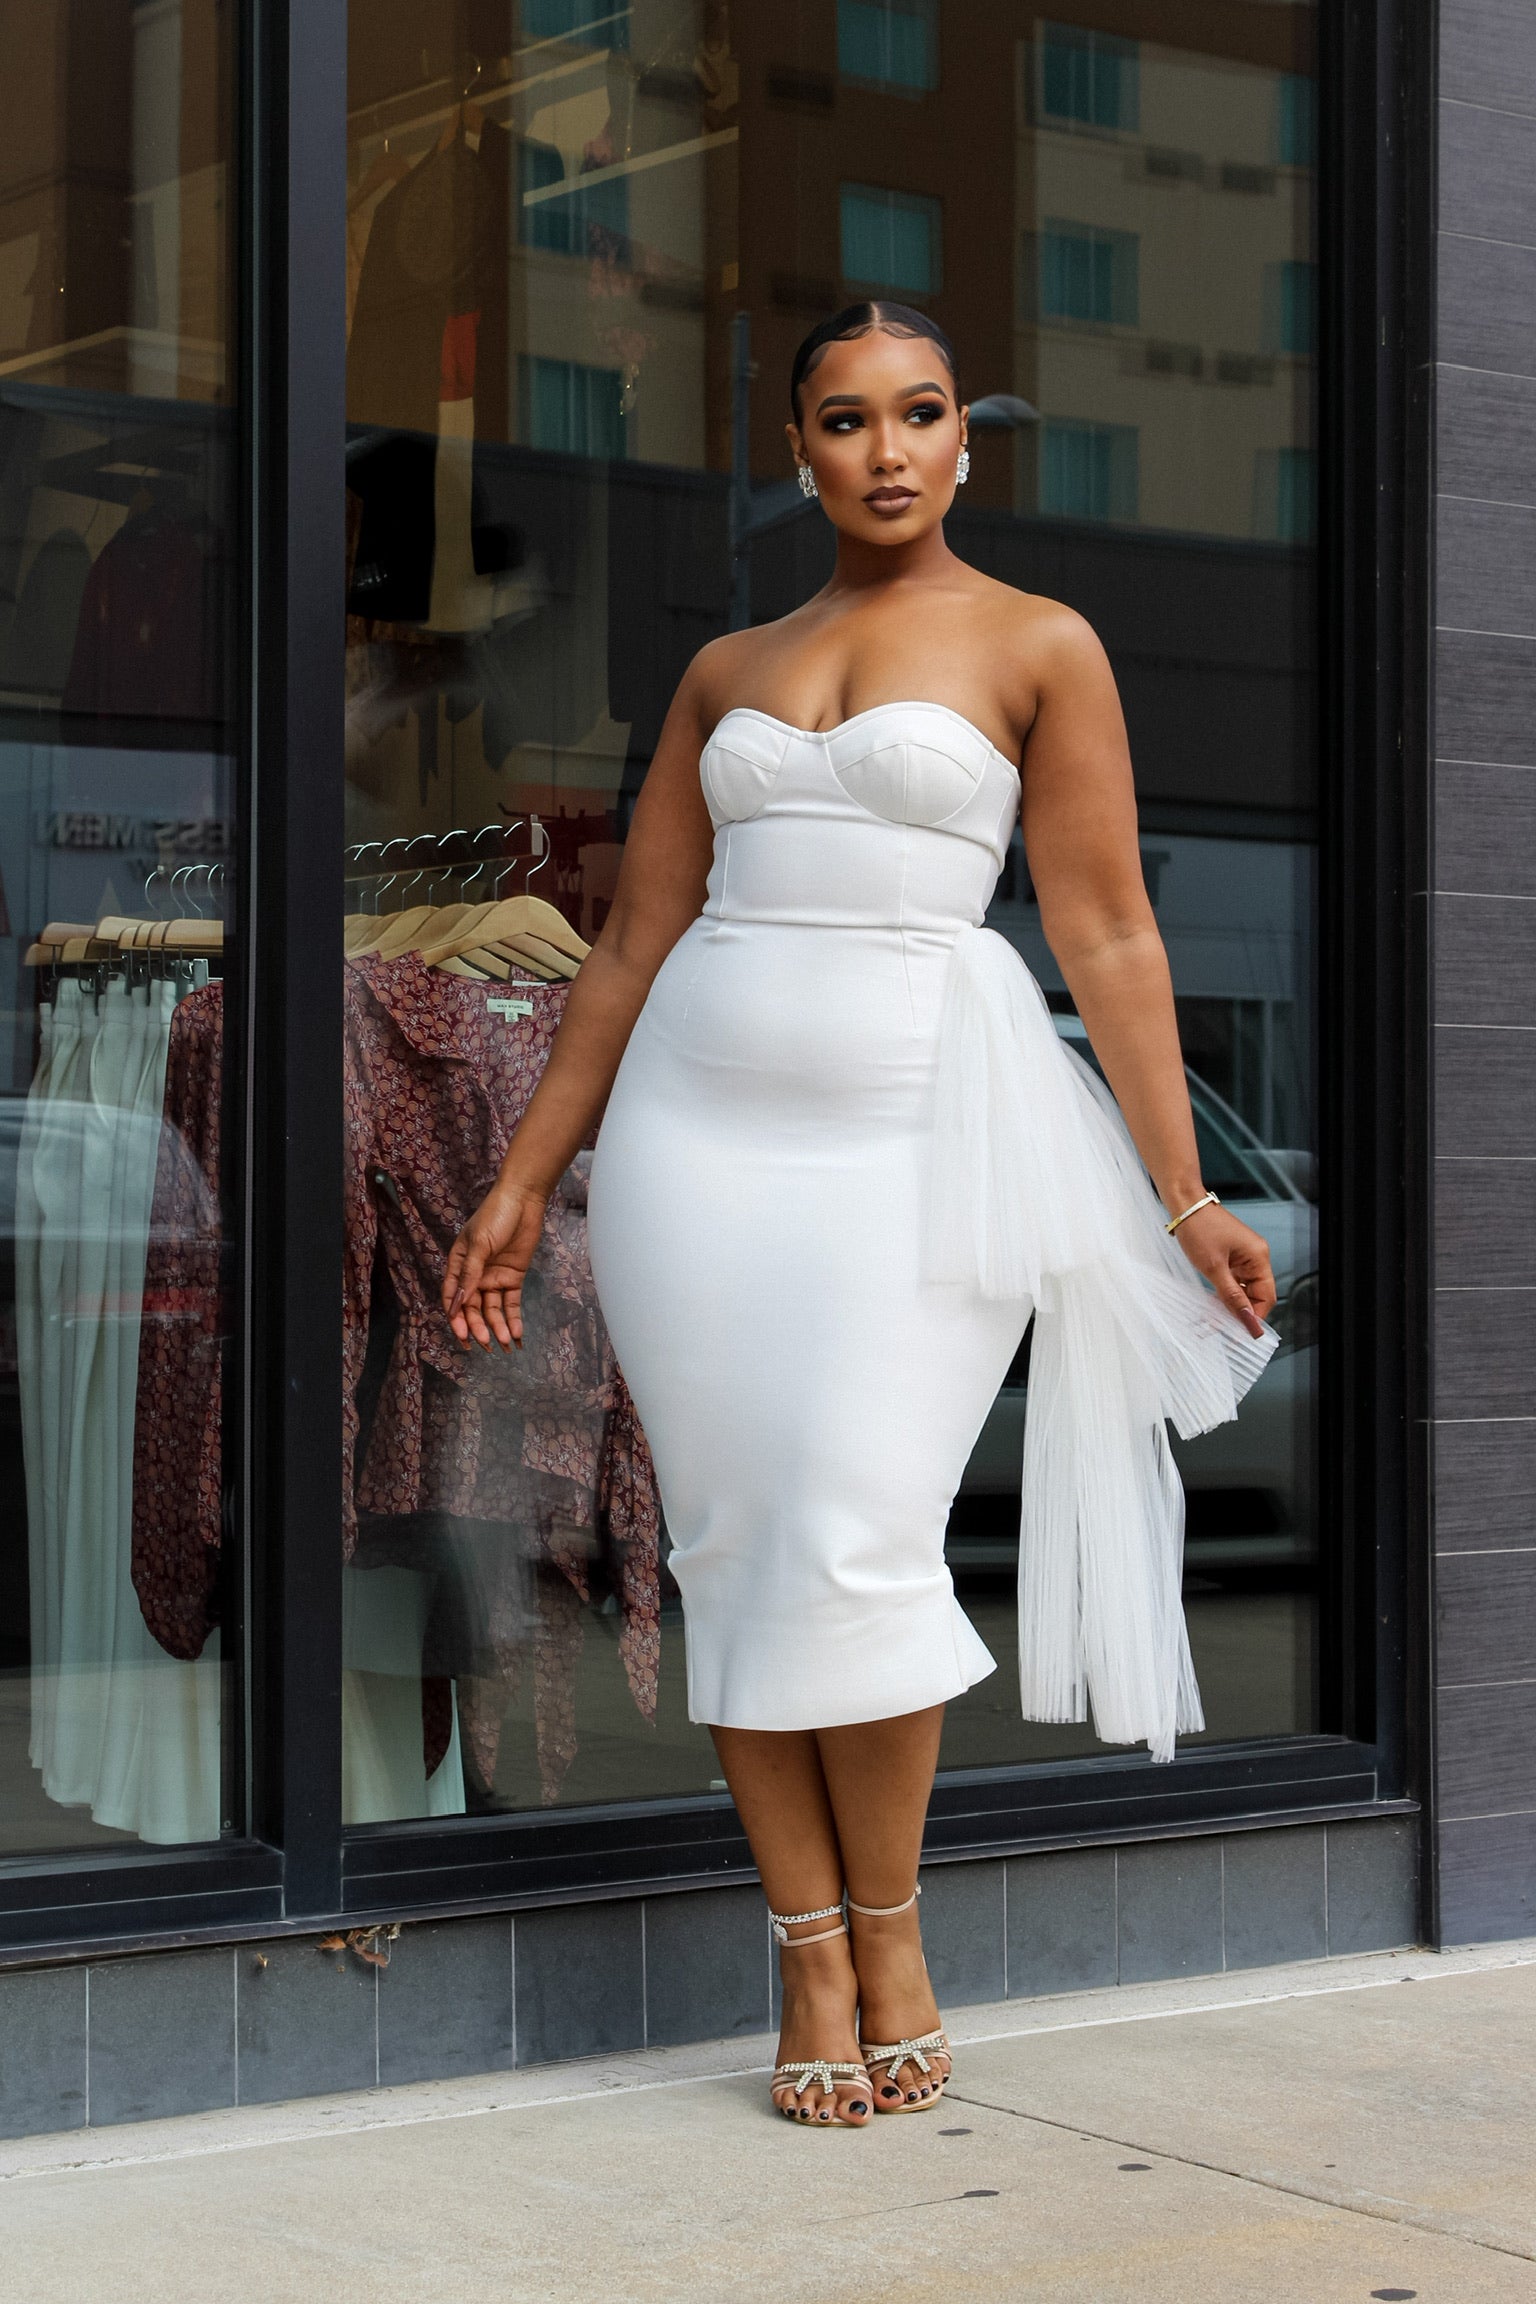 Woman wearing white dress and posing elegantly